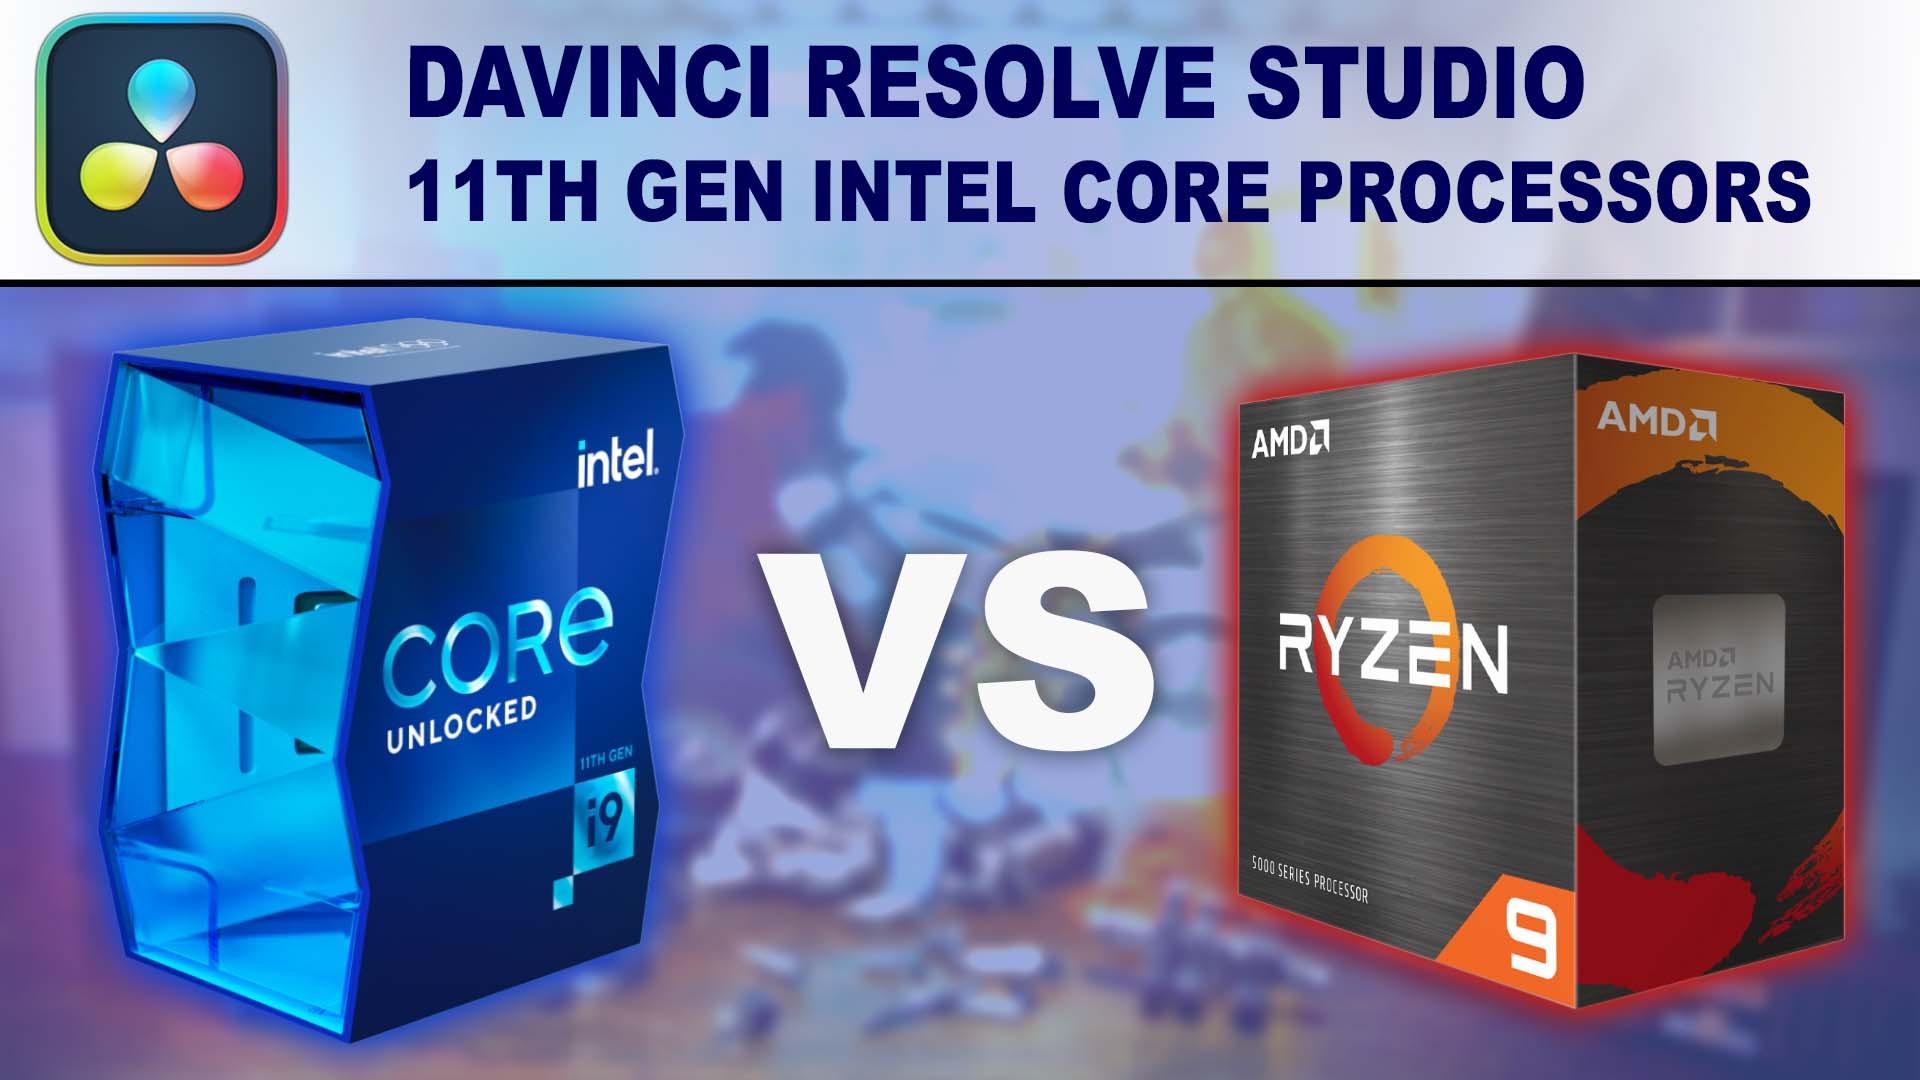 11th Gen Intel Core Processors for DaVinci Resolve Studio